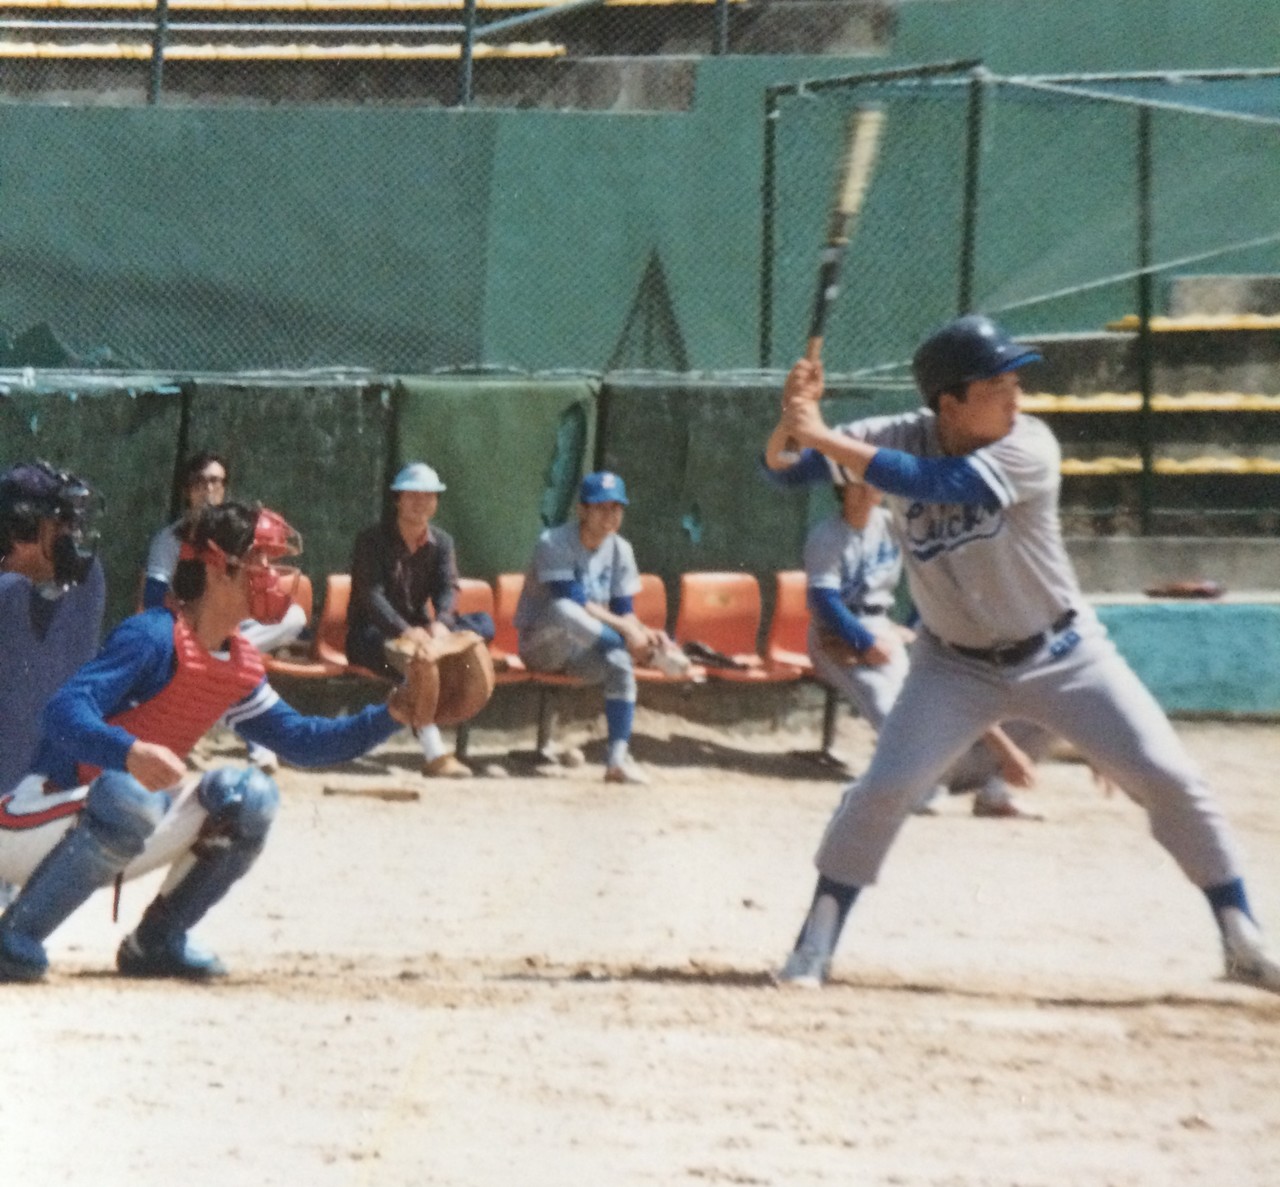 김용주 대표(오른쪽)는 젊었을 적부터 야구를 좋아했다. 박세진 레고켐 부사장과도 LG화학 근무 당시 야구를 통해 알게 됐다고 한다. [사진=레고켐 제공] 